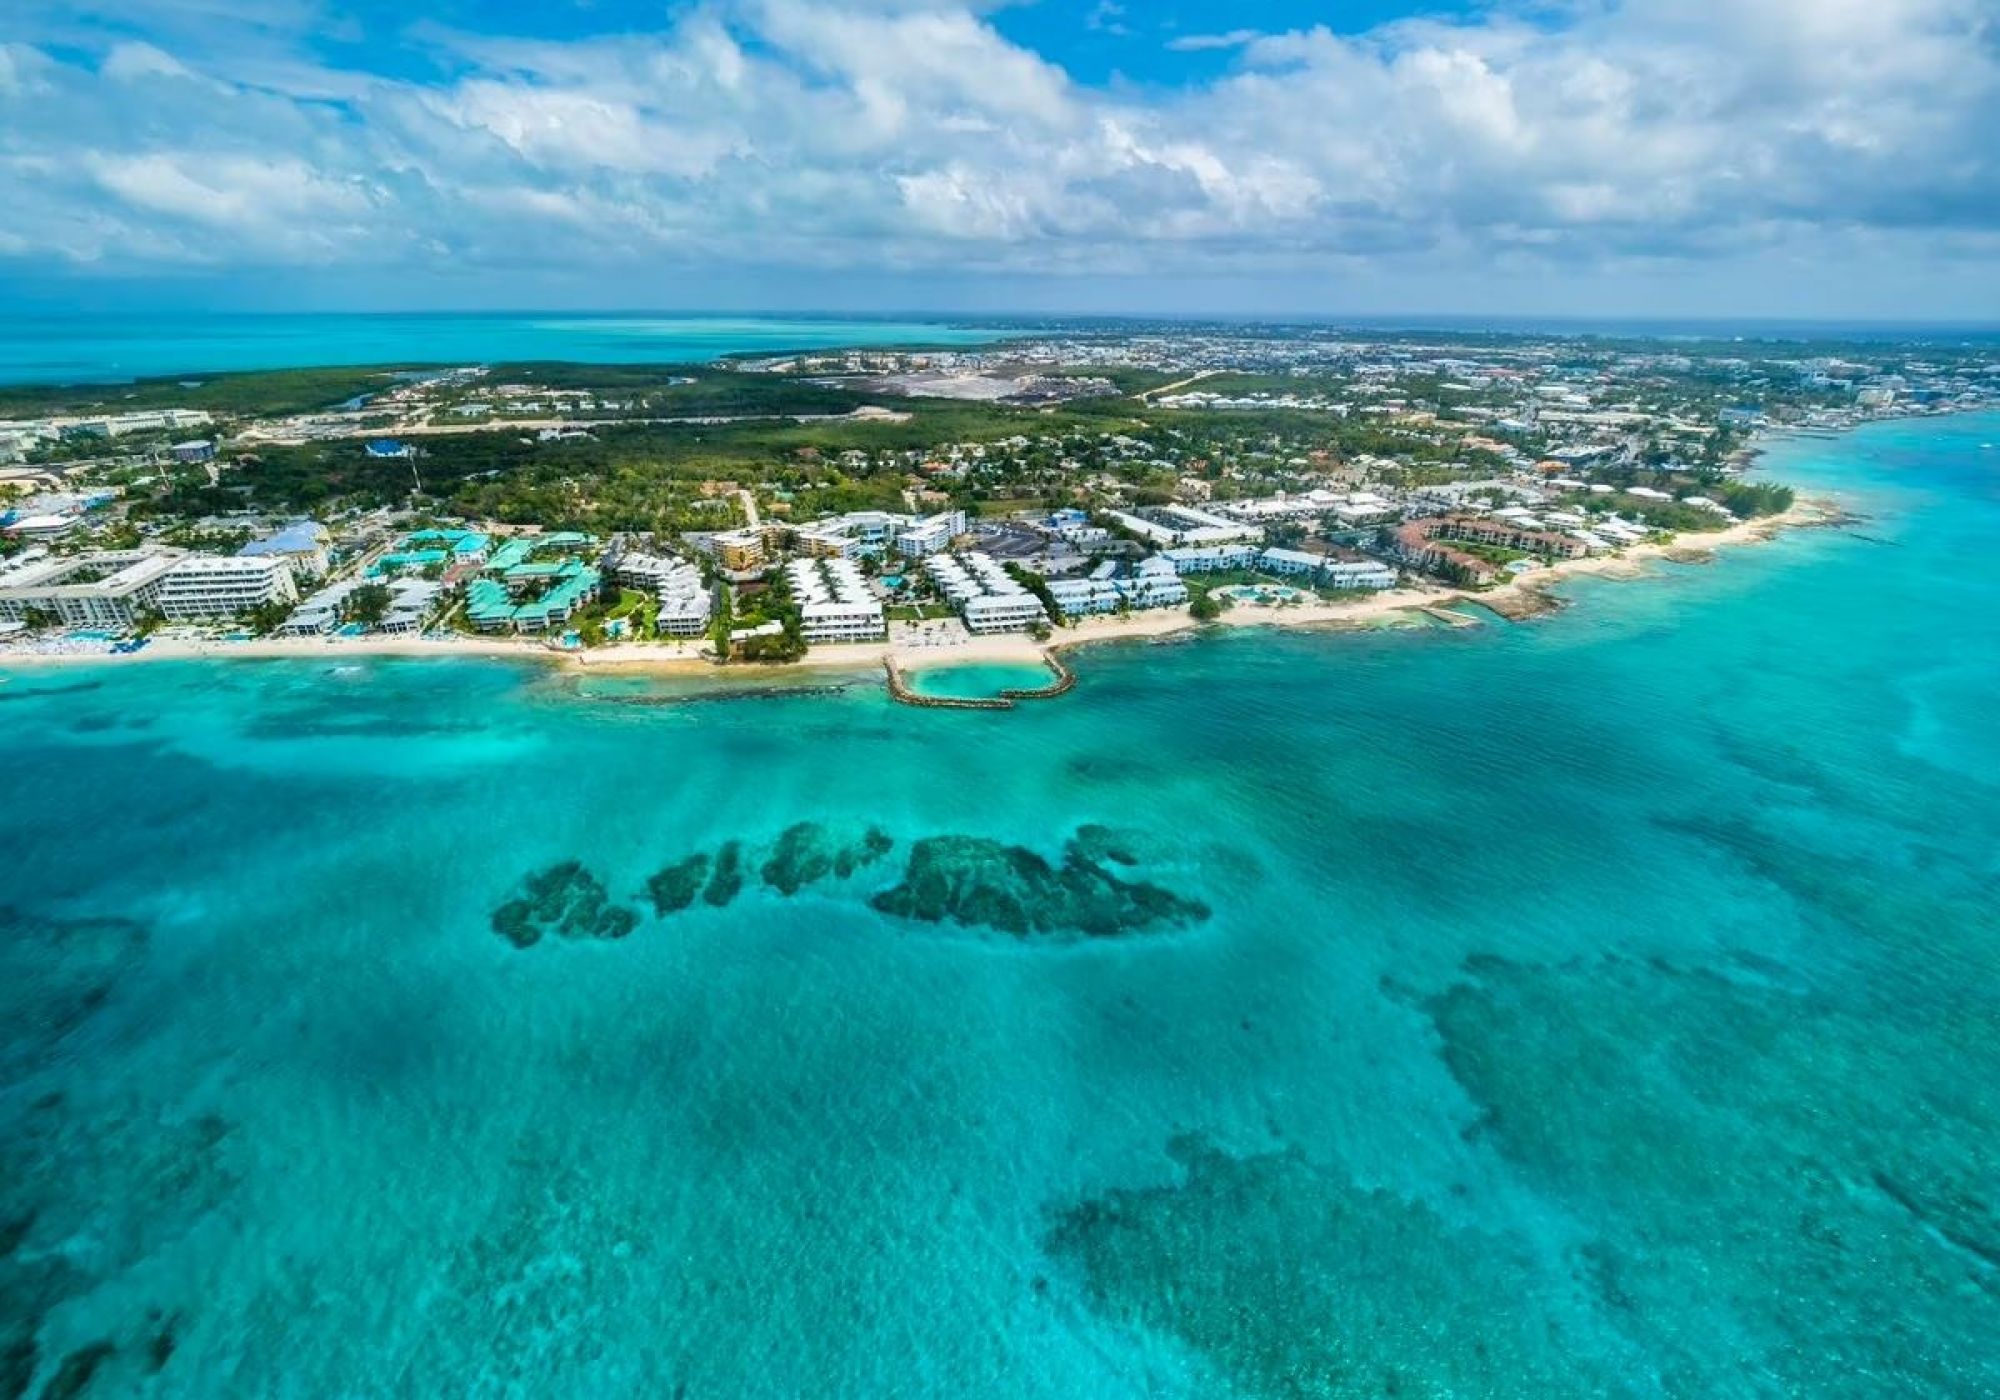 Complejos hoteleros de lujo en las Islas Caimán. GETTY IMAGES/WESTEND61